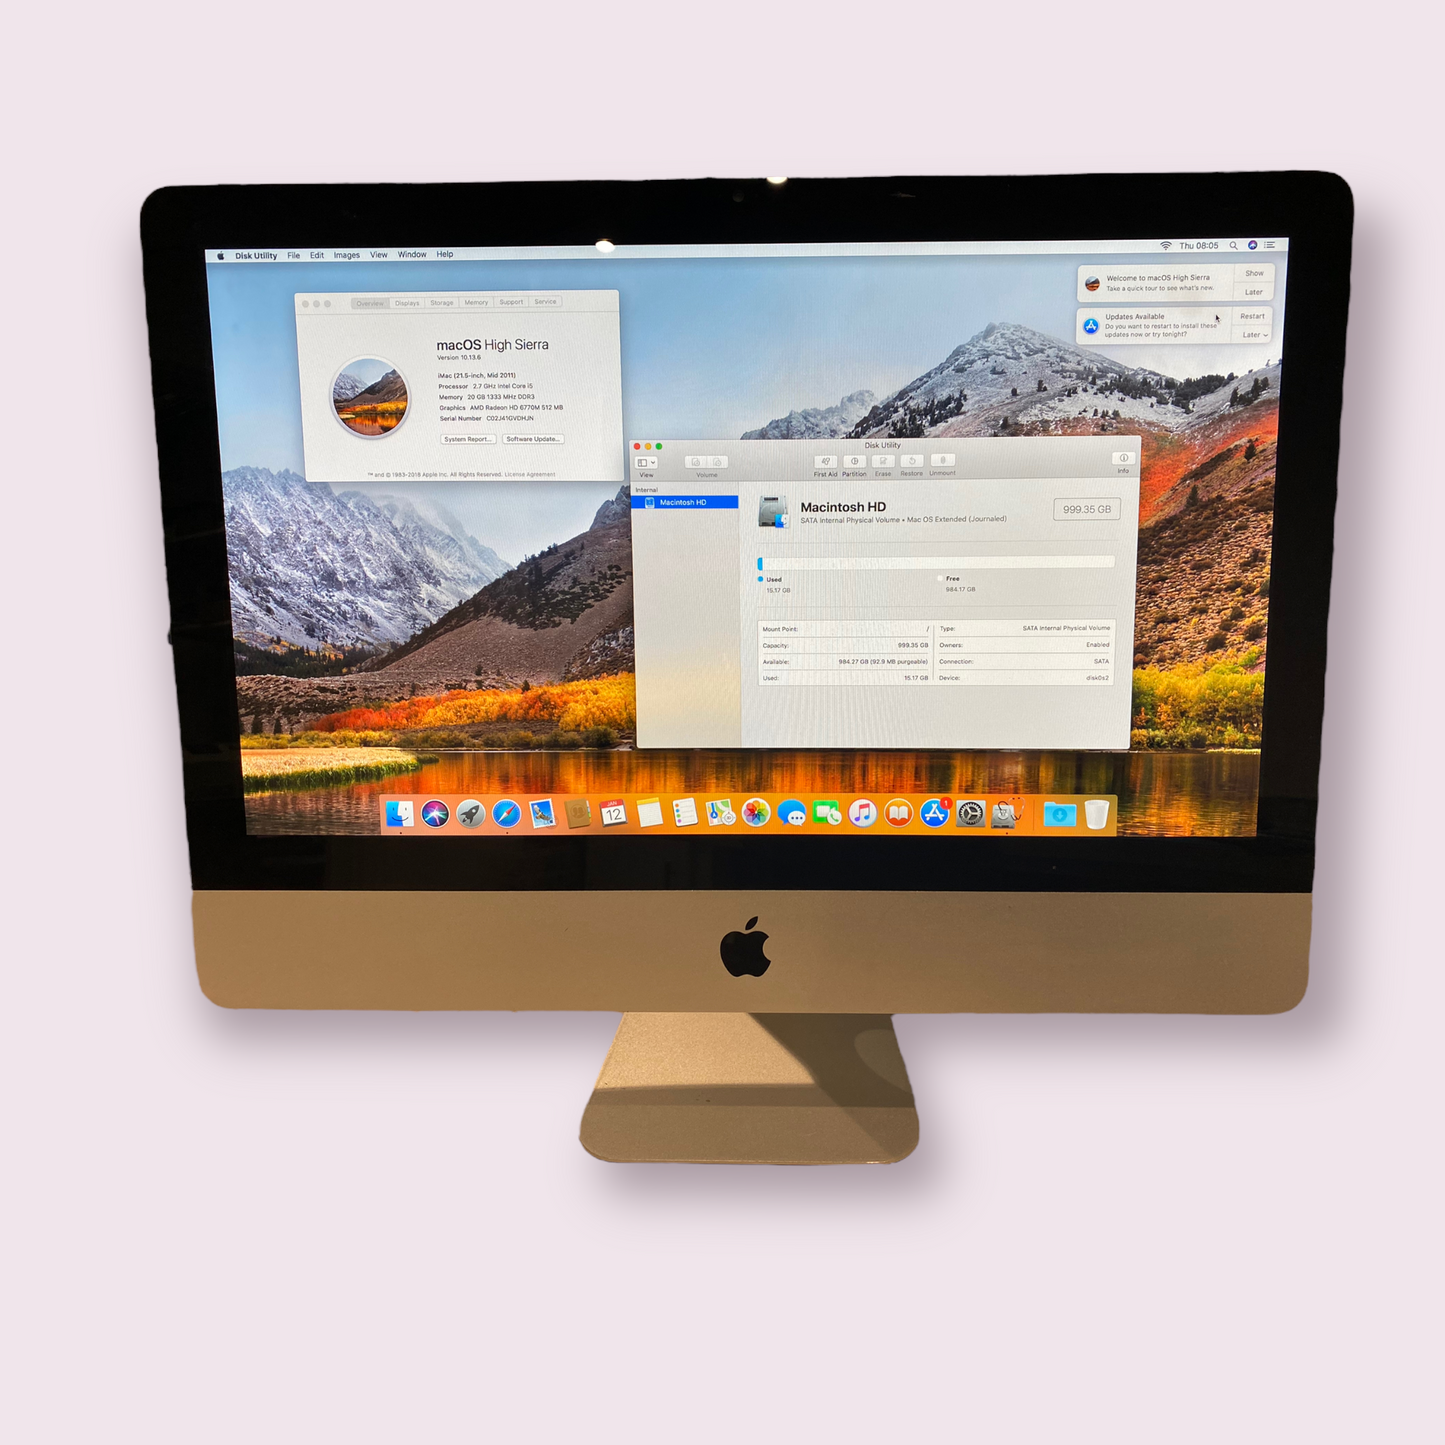 Apple iMac 21.5 2011 i5 @ 2.7GHz 1TB HDD 20GB RAM Radeon 6750 512MB High Sierra